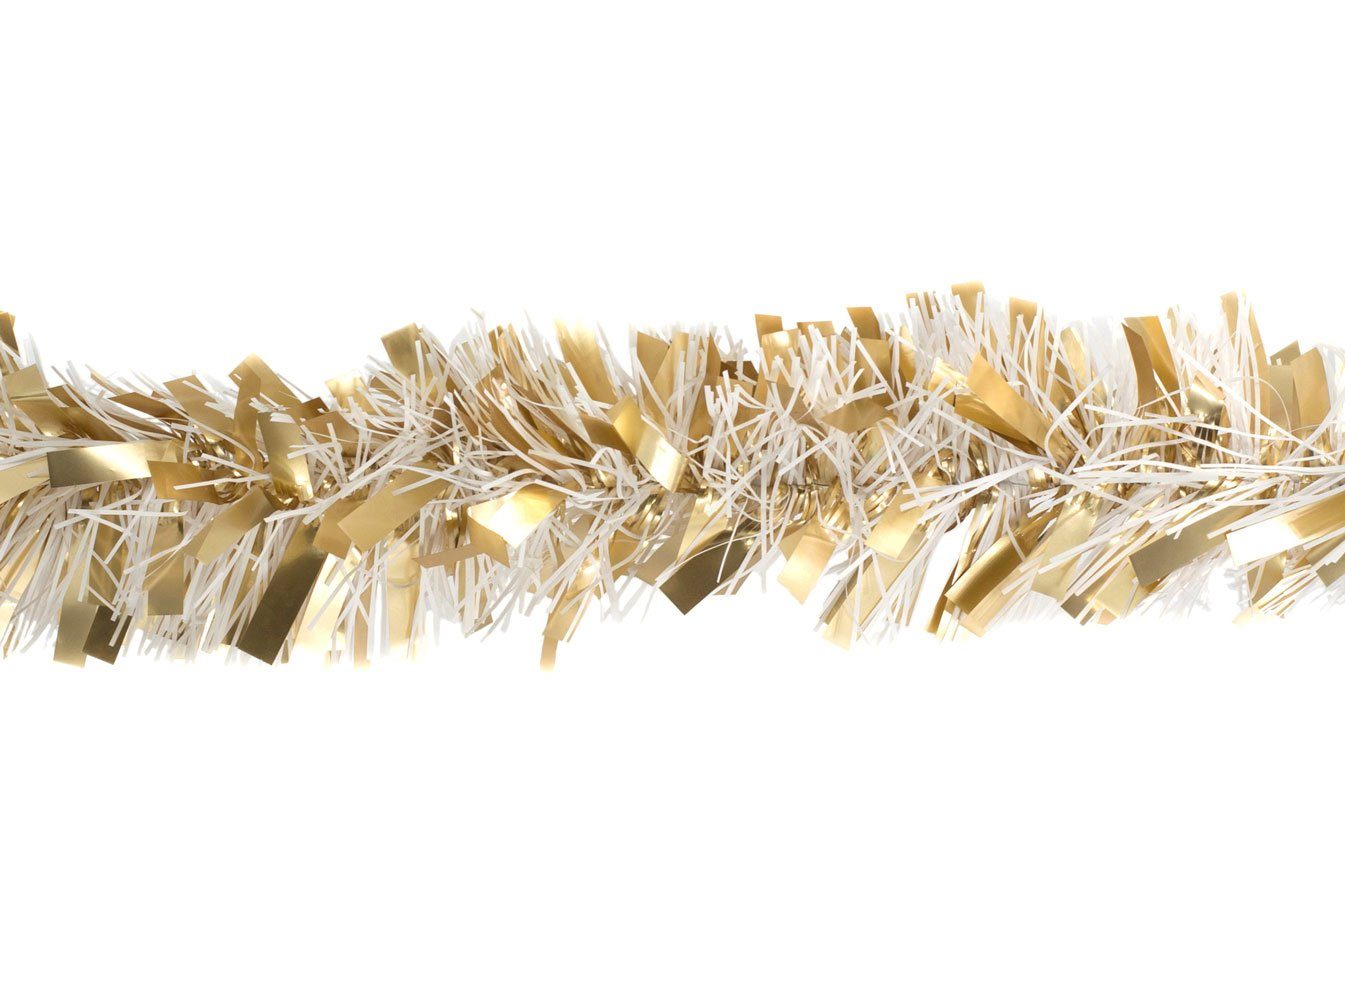 Creativery Girlanden, Weihnachtsgirlande Lametta 8cm x 2m gold / weiß